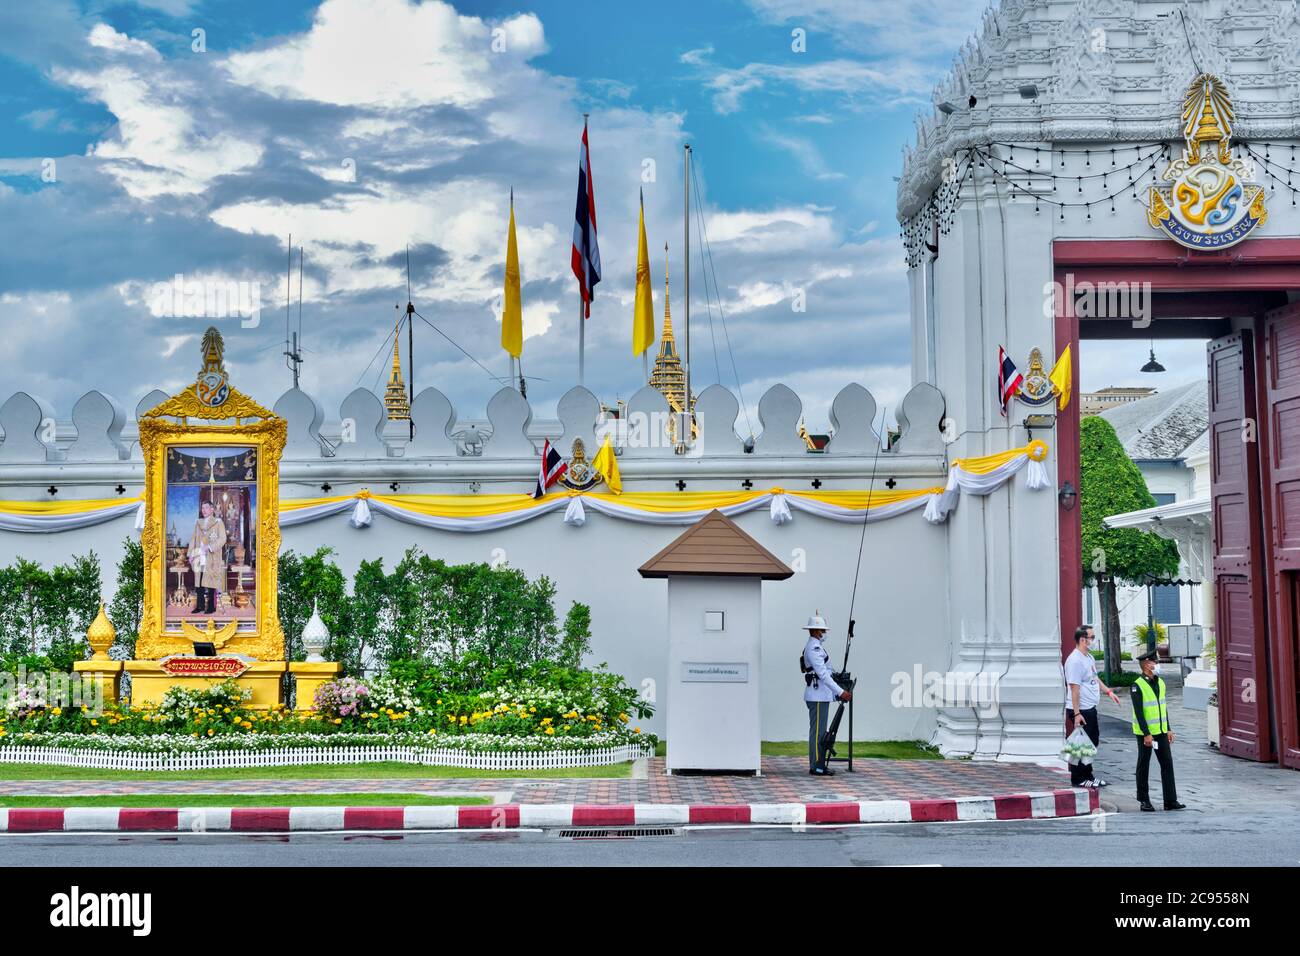 La mousson surmonte l'entrée du Grand Palais et de Wat Phra Kaew, avec une garde royale et un portrait du roi Maha Vajiralongkorn ; Bangkok, Thaïlande Banque D'Images